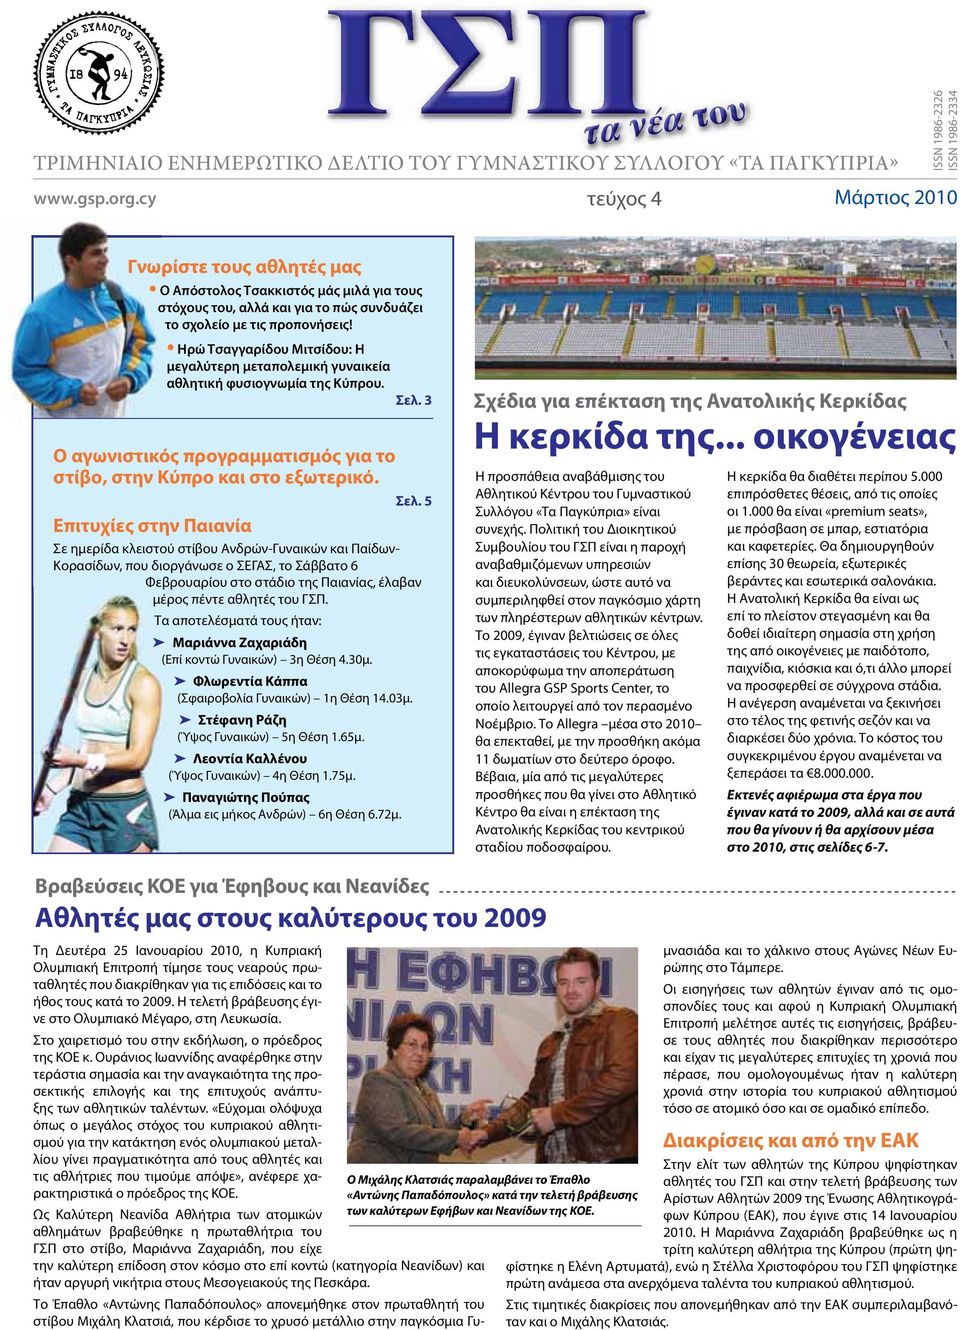 3 Ο αγωνιστικός προγραμματισμός για το στίβο, στην Κύπρο και στο εξωτερικό. Επιτυχίες στην Παιανία Σε ημερίδα κλειστού στίβου Ανδρών-Γυναικών και Παίδων- Σελ.